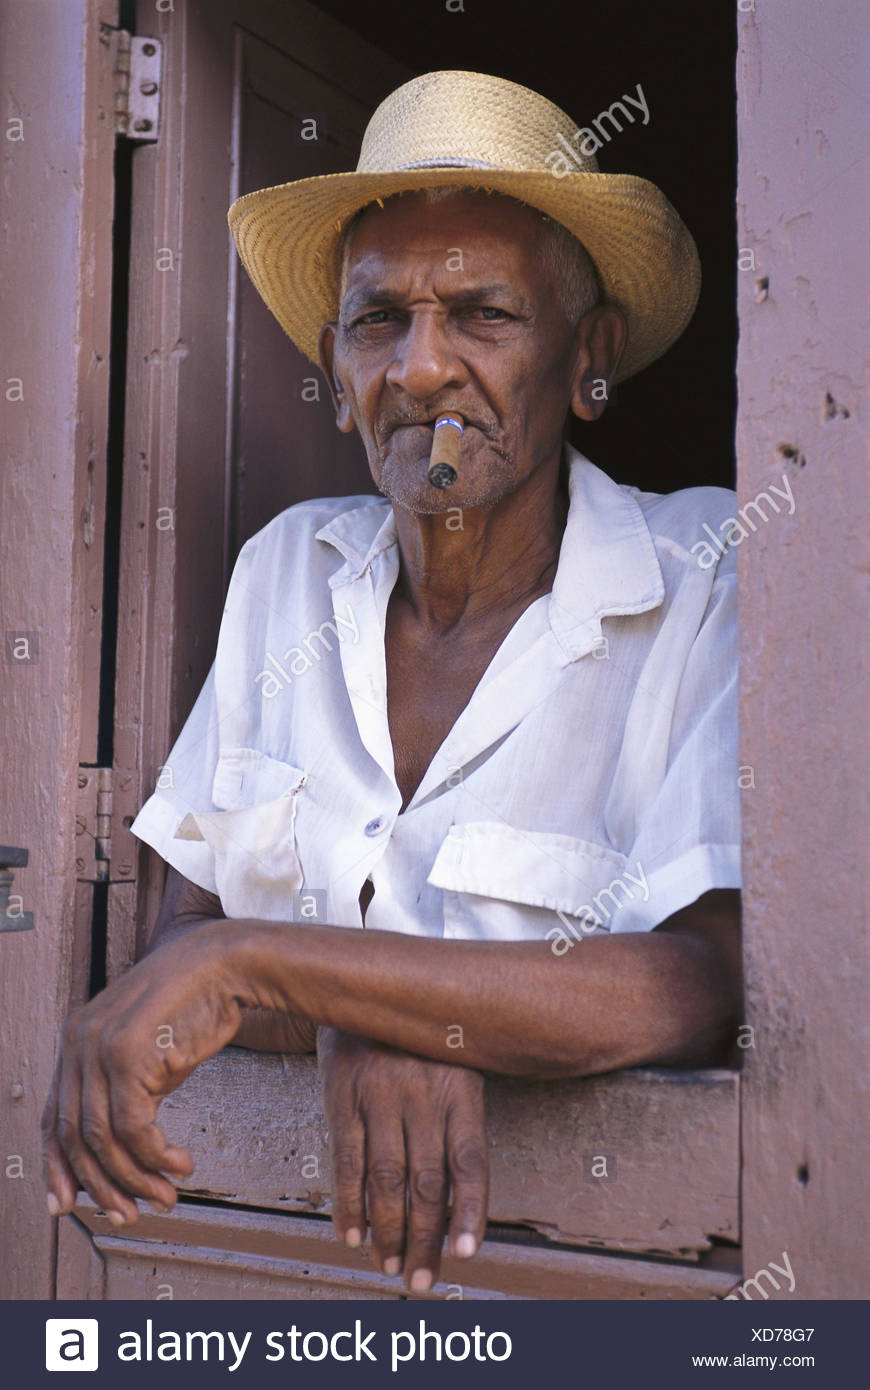 Cuba, Trinidad, patron, chapeau de paille, cigare, portrait modèle ne  libération des Caraïbes, mer des Caraïbes,